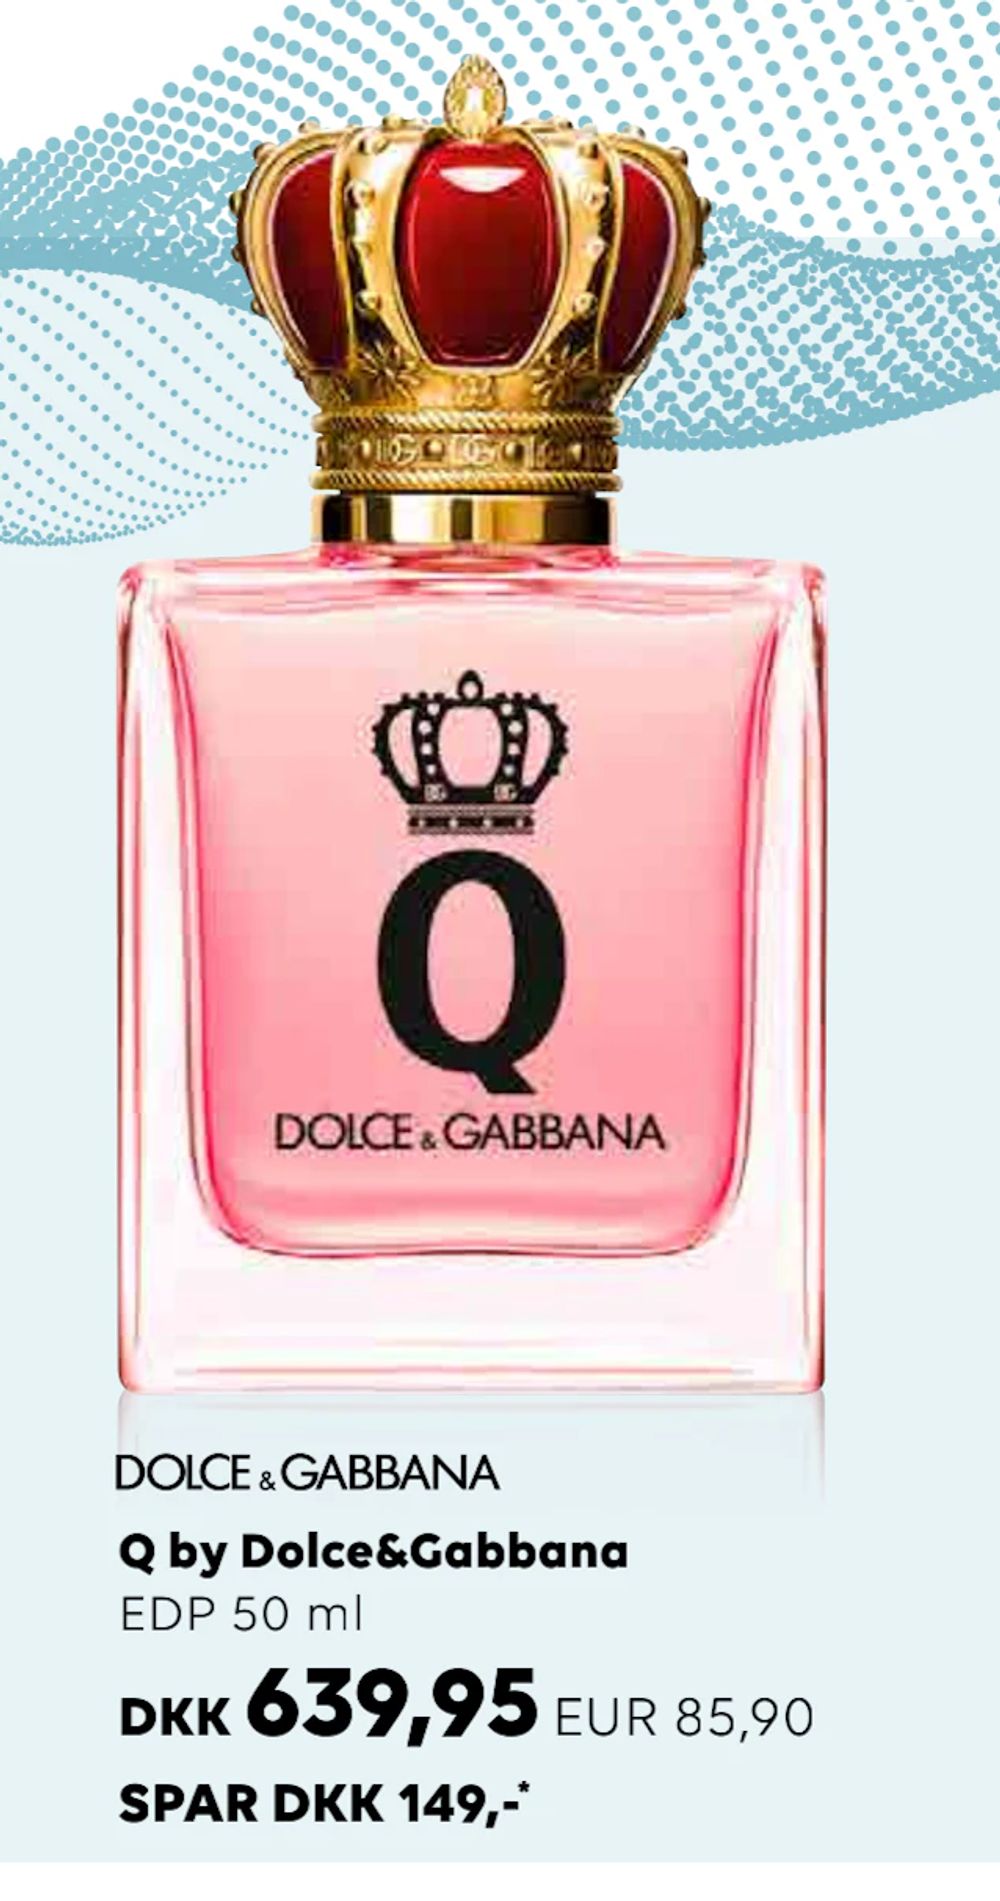 Tilbud på Q by Dolce&Gabbana fra Scandlines Travel Shop til 639,95 kr.